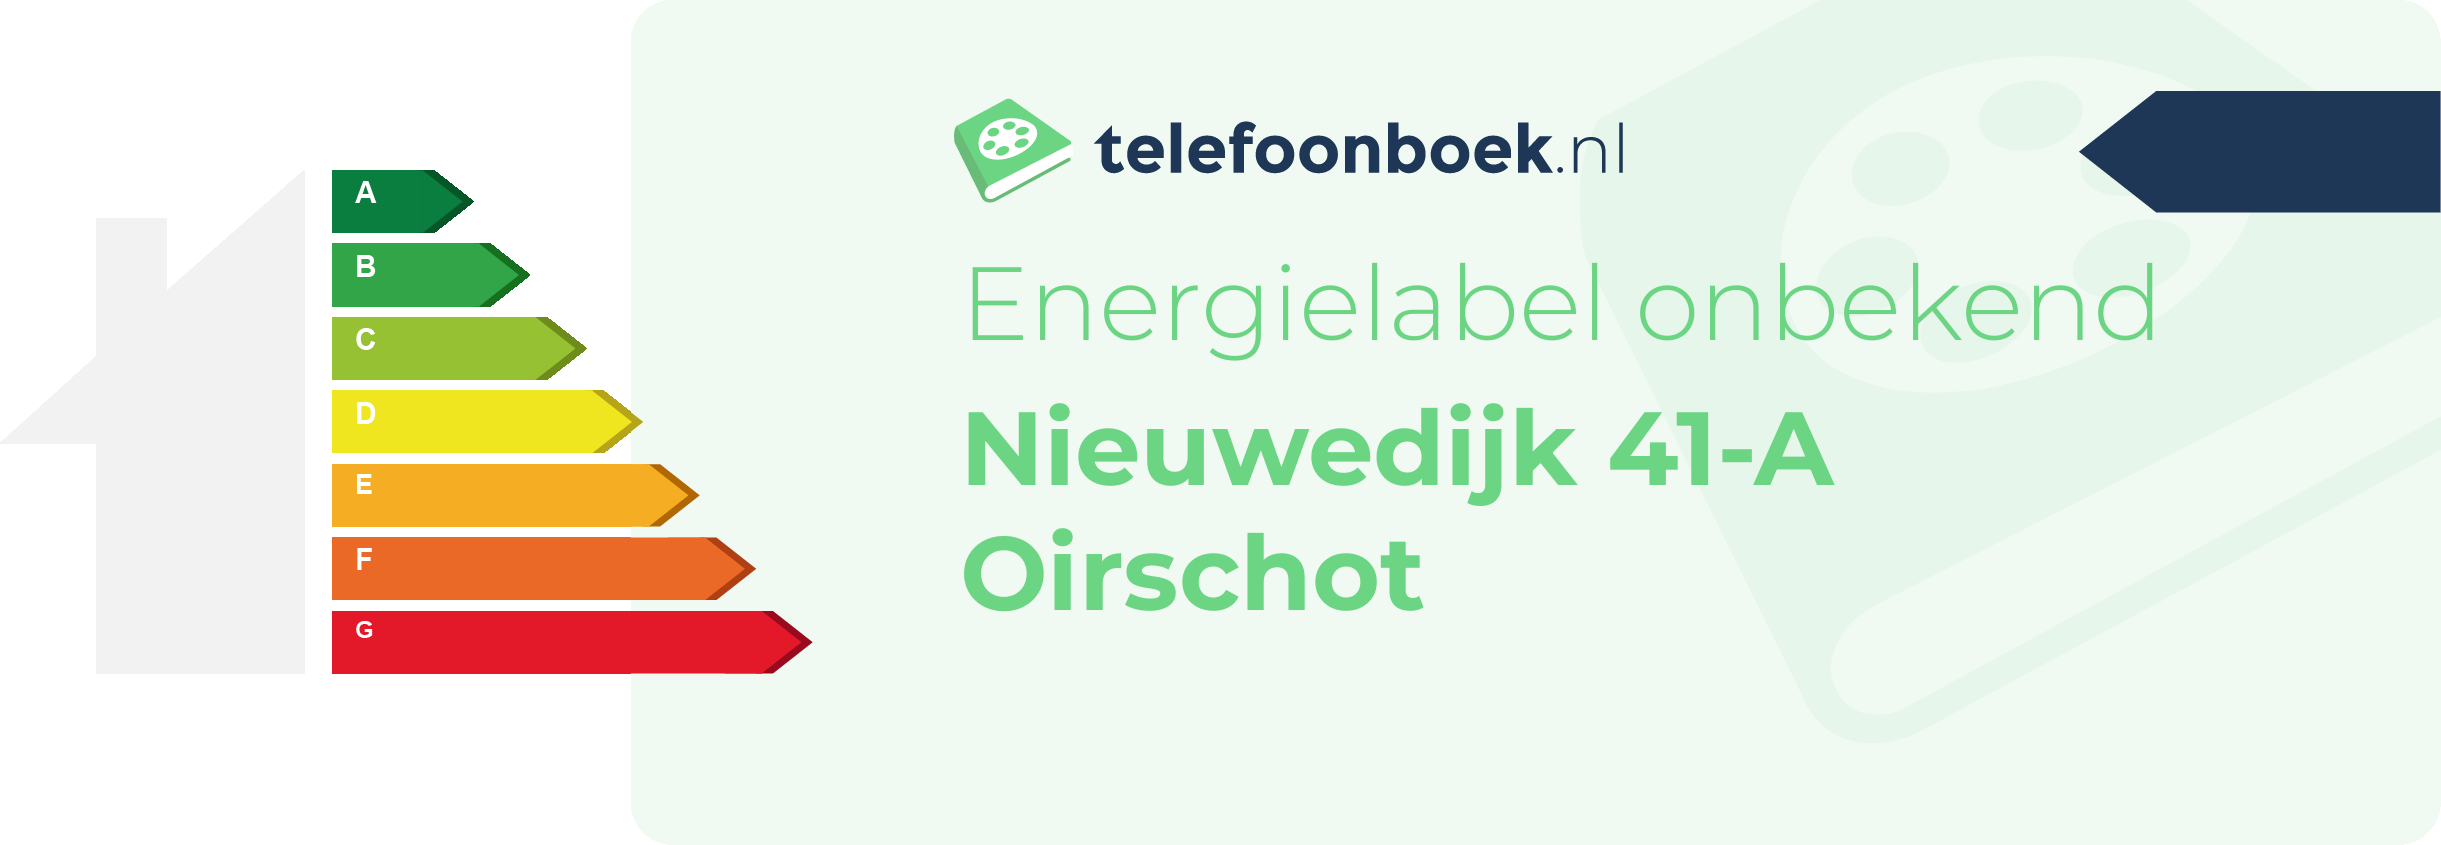 Energielabel Nieuwedijk 41-A Oirschot